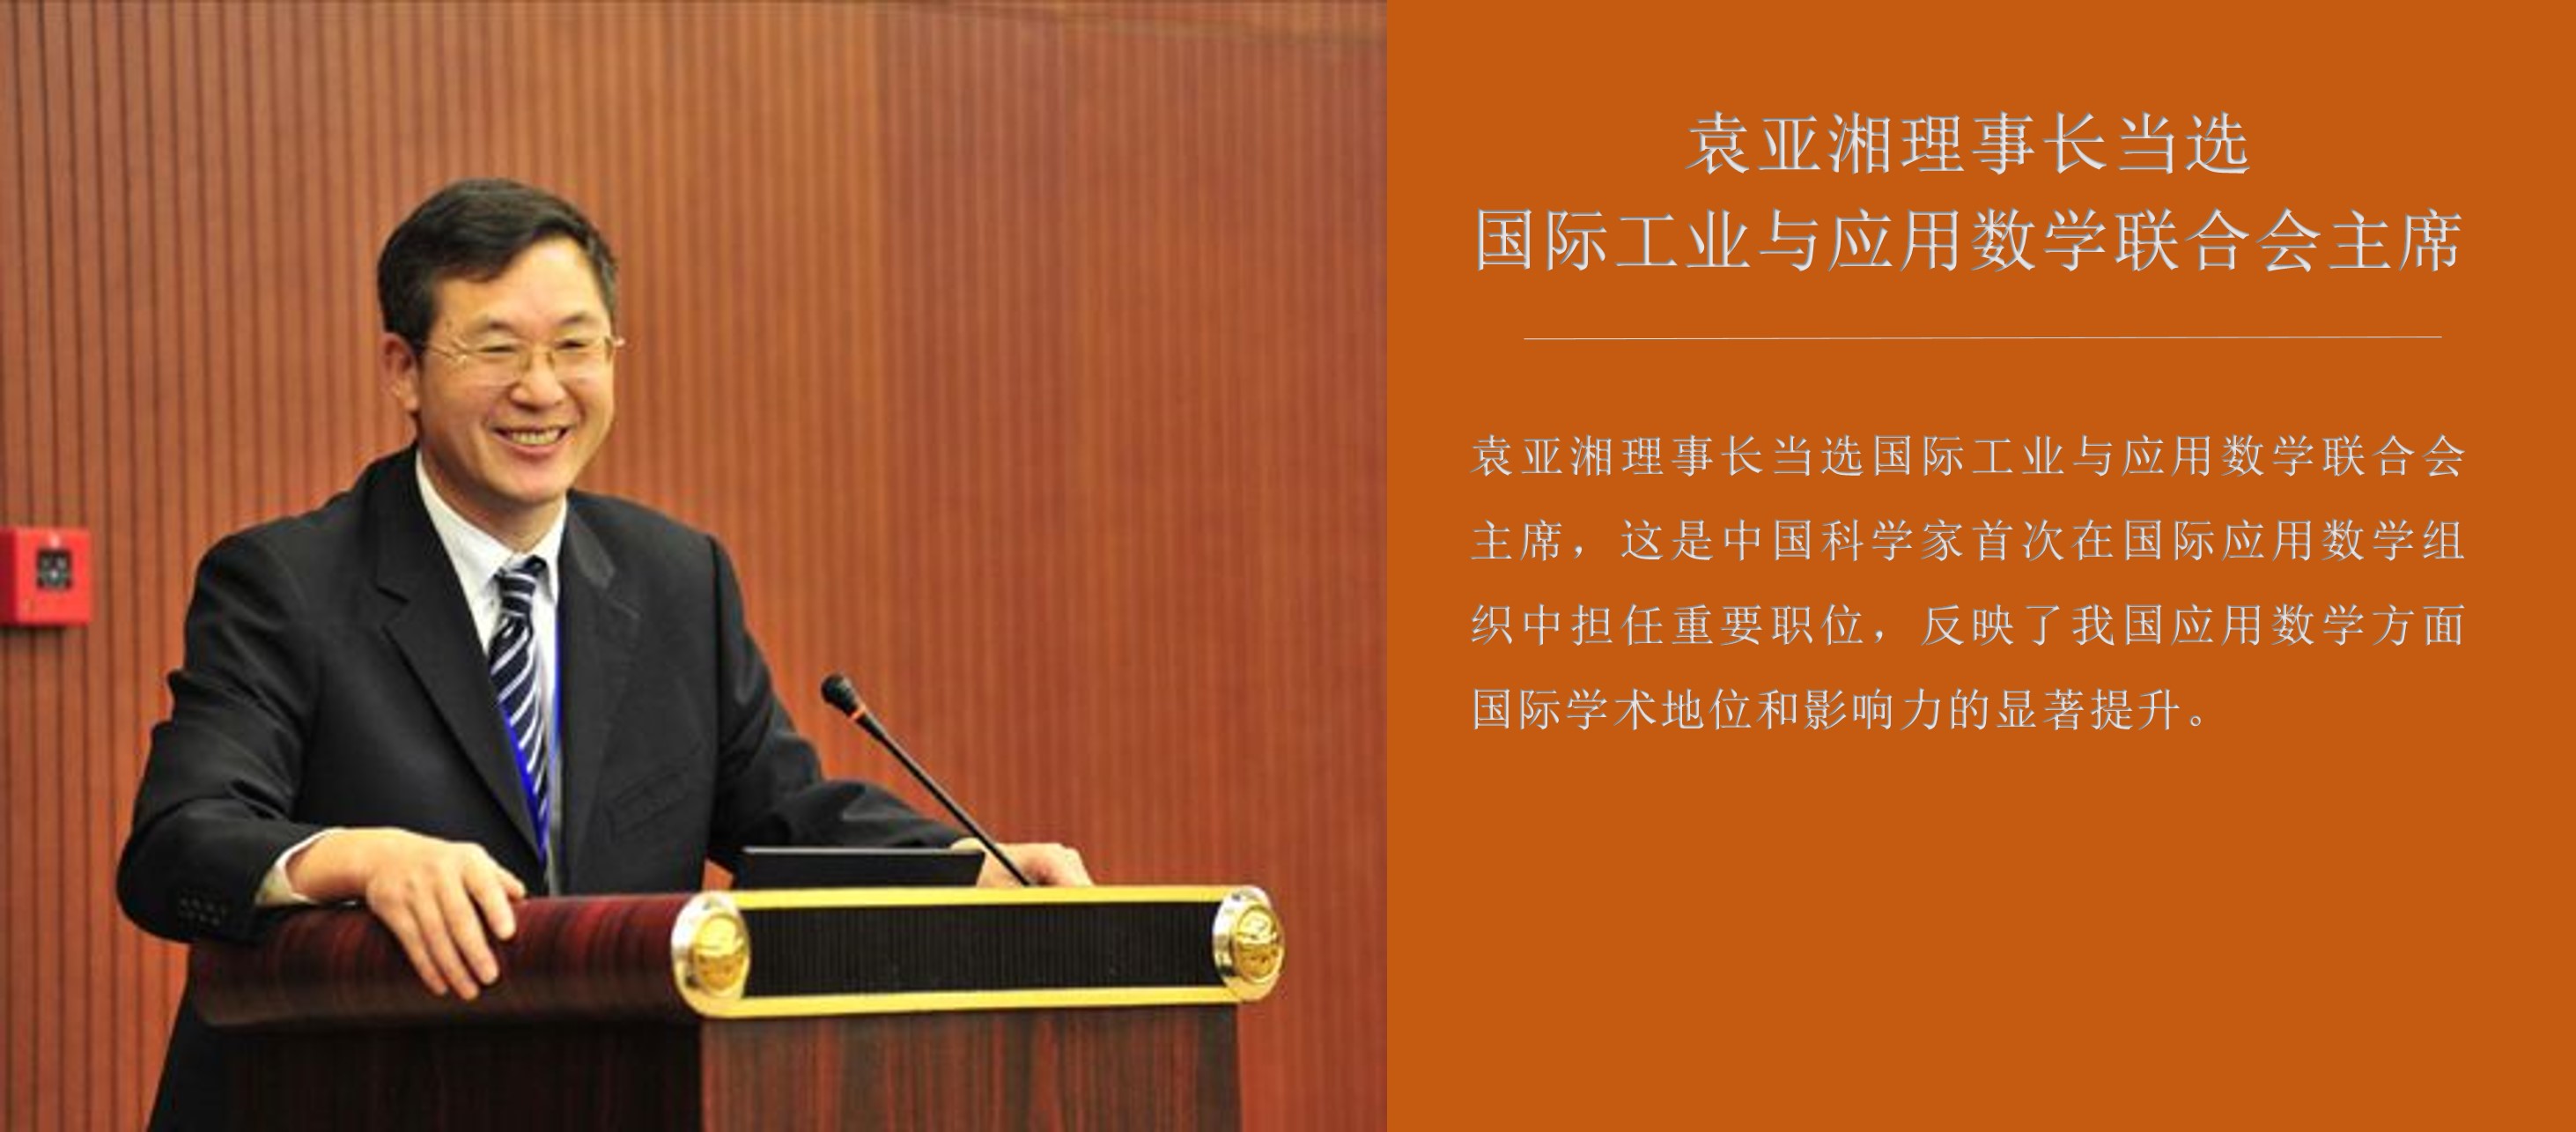 袁亚湘理事长当选国际工业与应用数学联合会主席